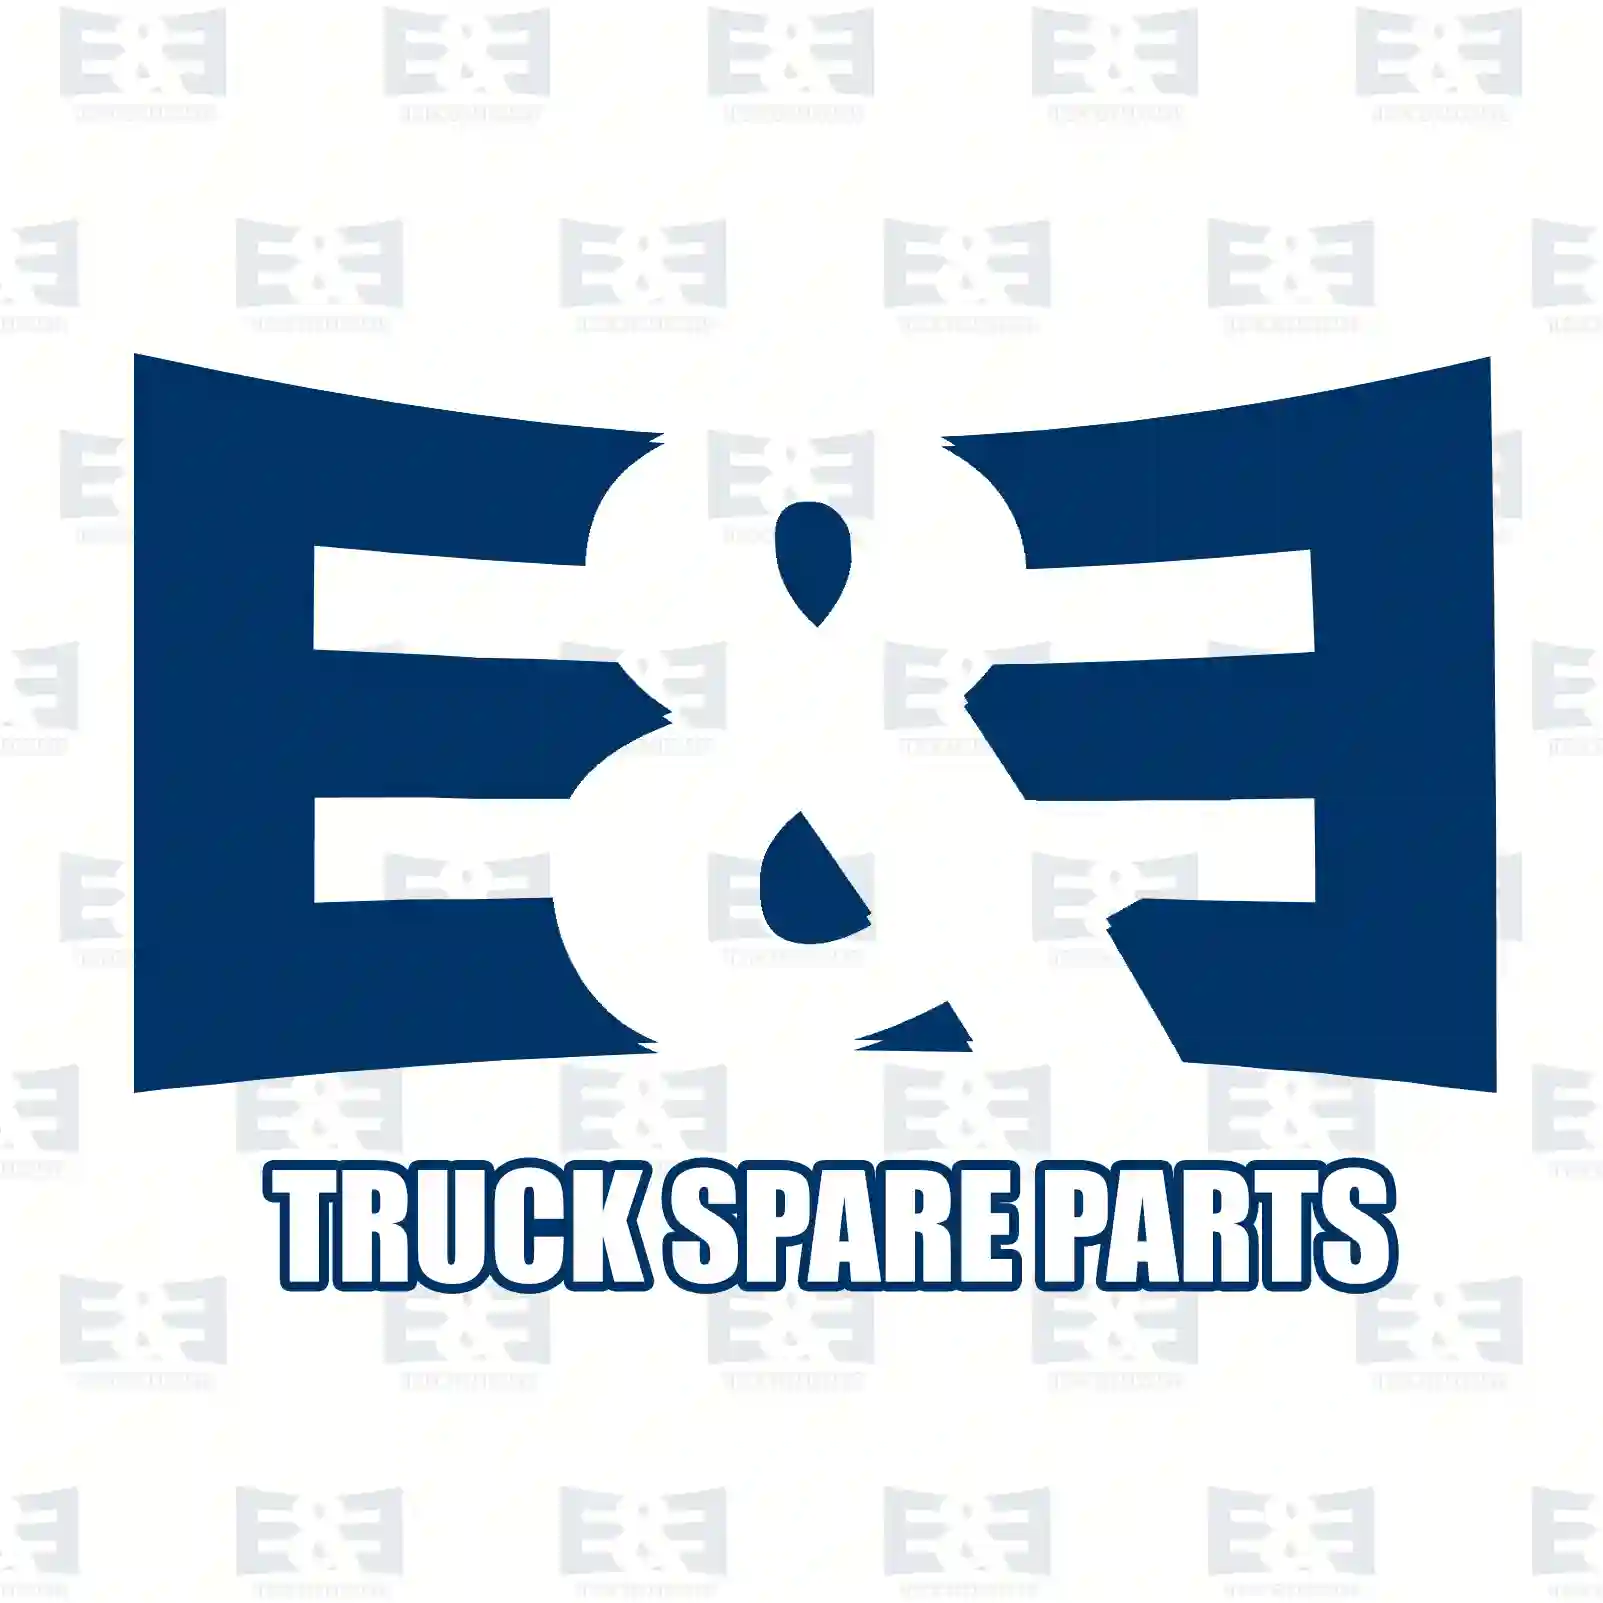 Exhaust brake, complete, 2E2208156, 1700502, 1703584 ||  2E2208156 E&E Truck Spare Parts | Truck Spare Parts, Auotomotive Spare Parts Exhaust brake, complete, 2E2208156, 1700502, 1703584 ||  2E2208156 E&E Truck Spare Parts | Truck Spare Parts, Auotomotive Spare Parts